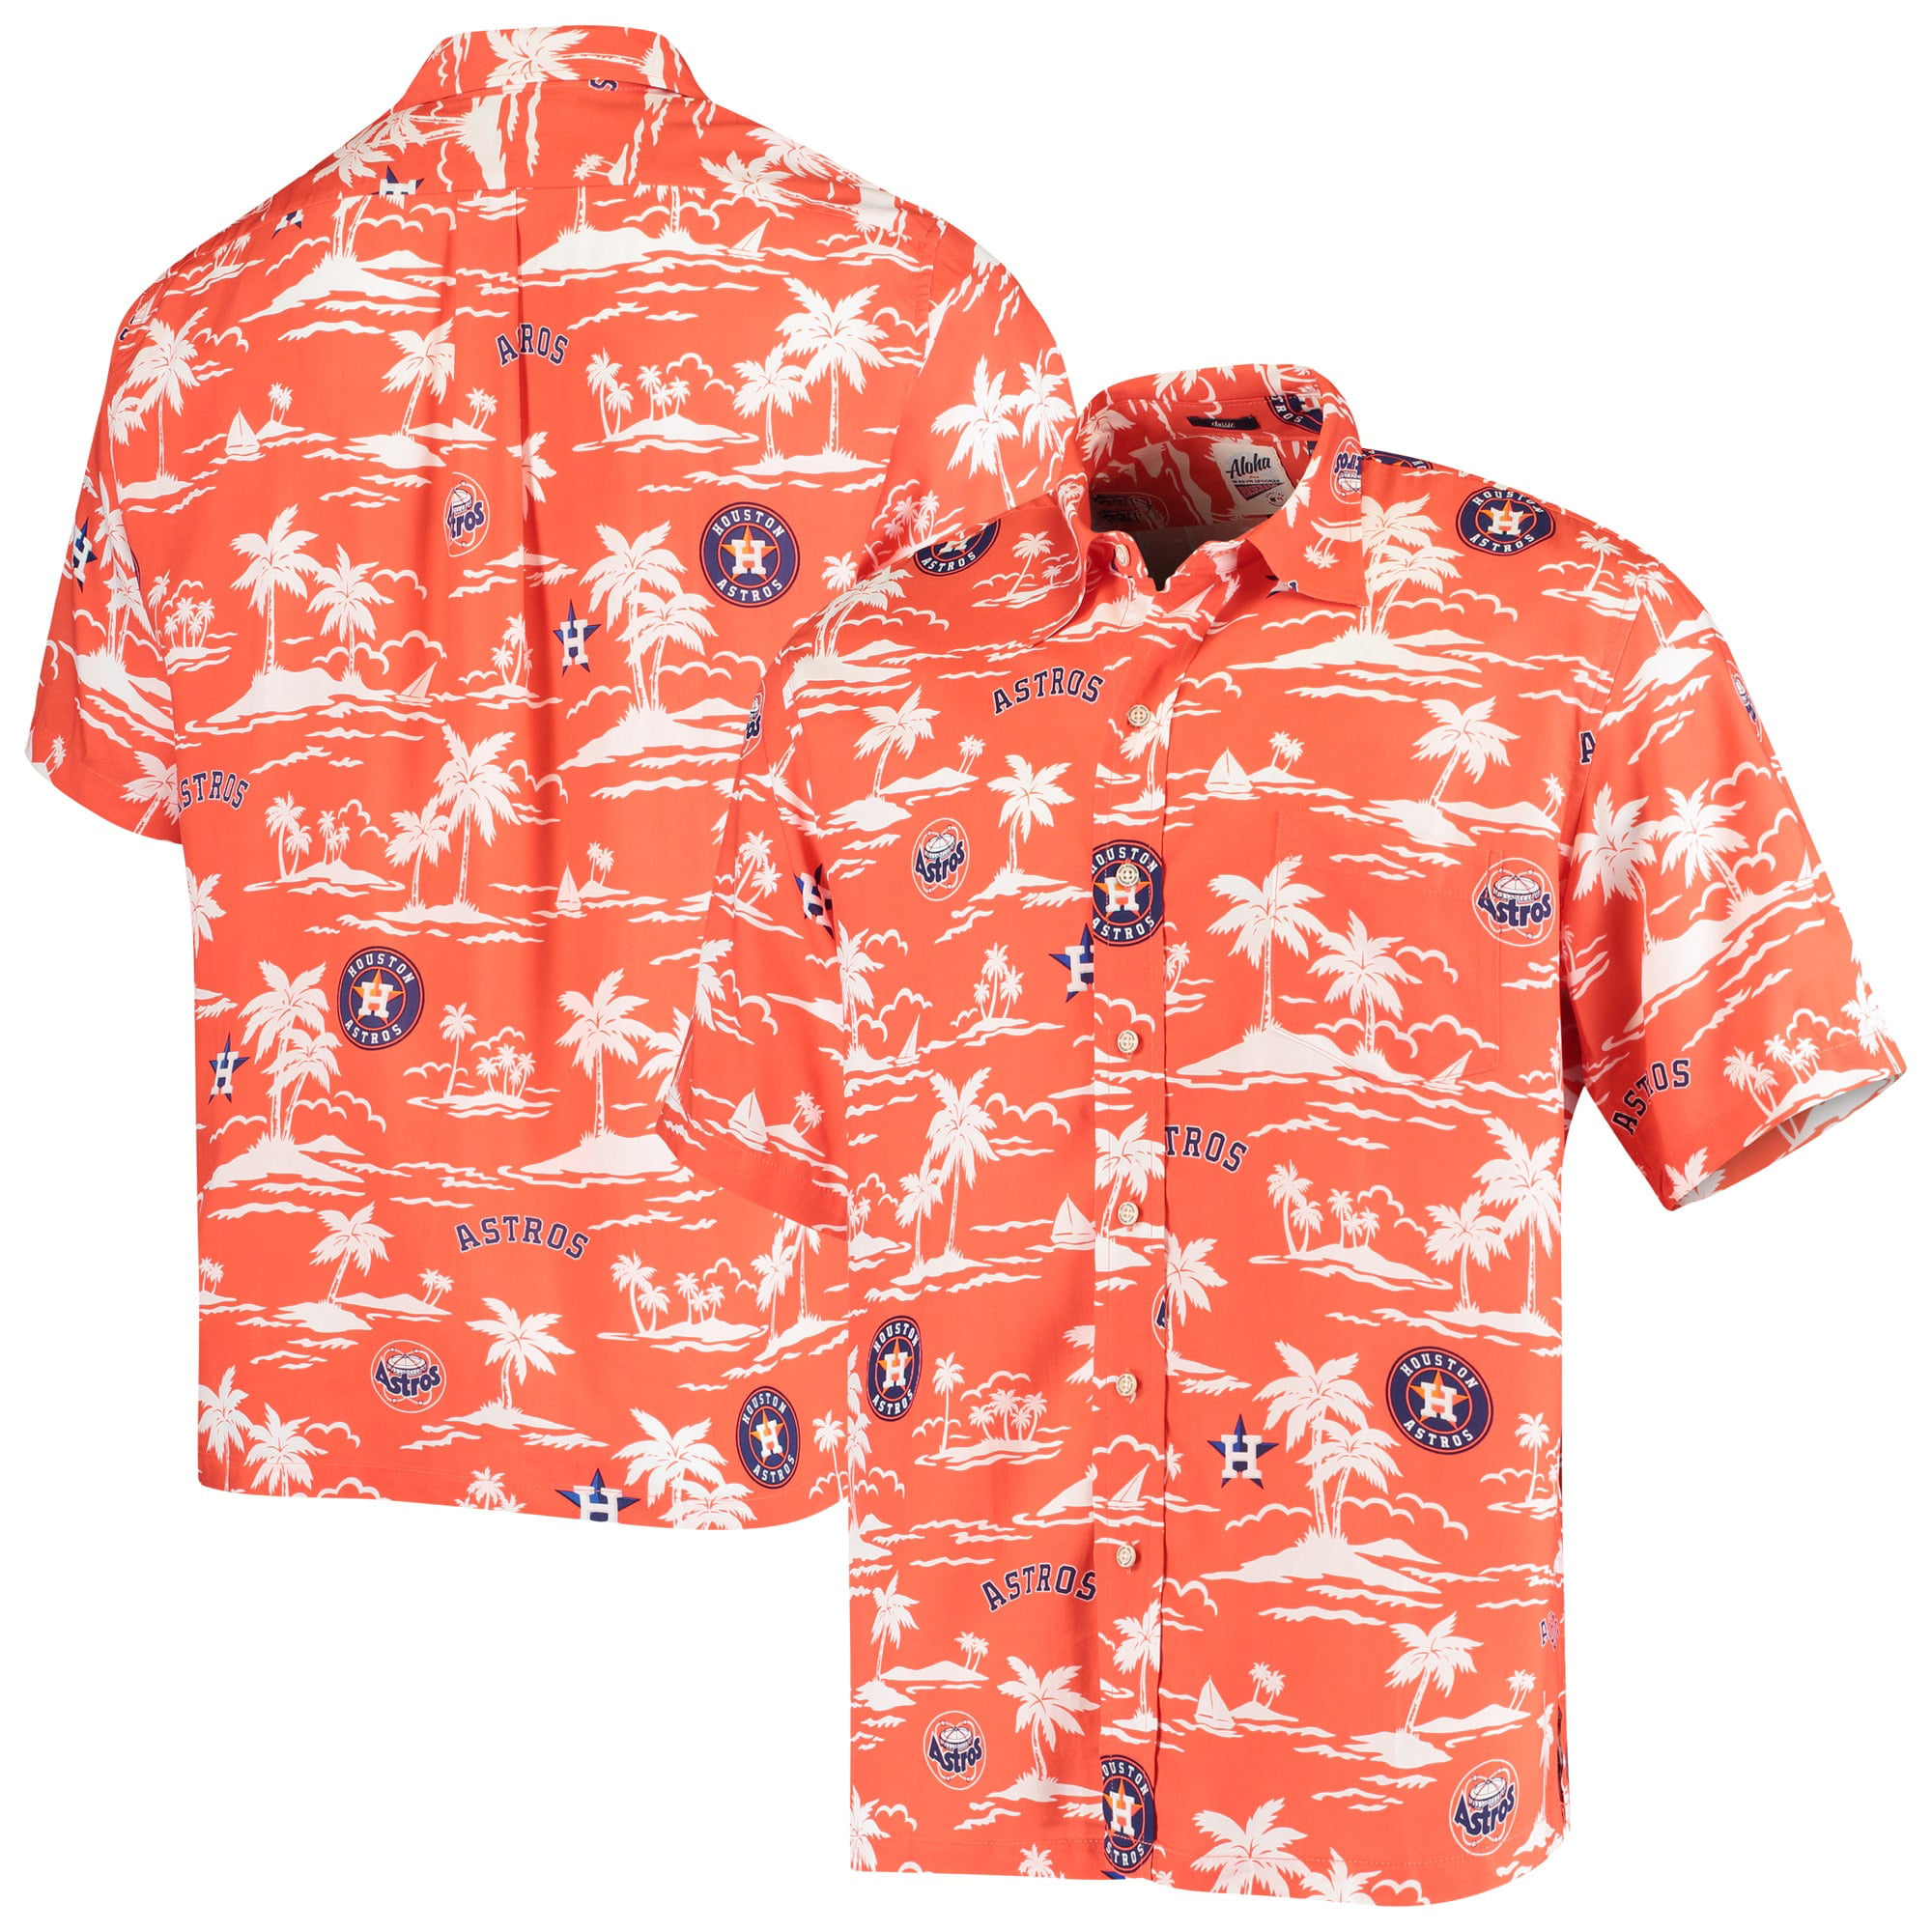 houston astros orange t shirt